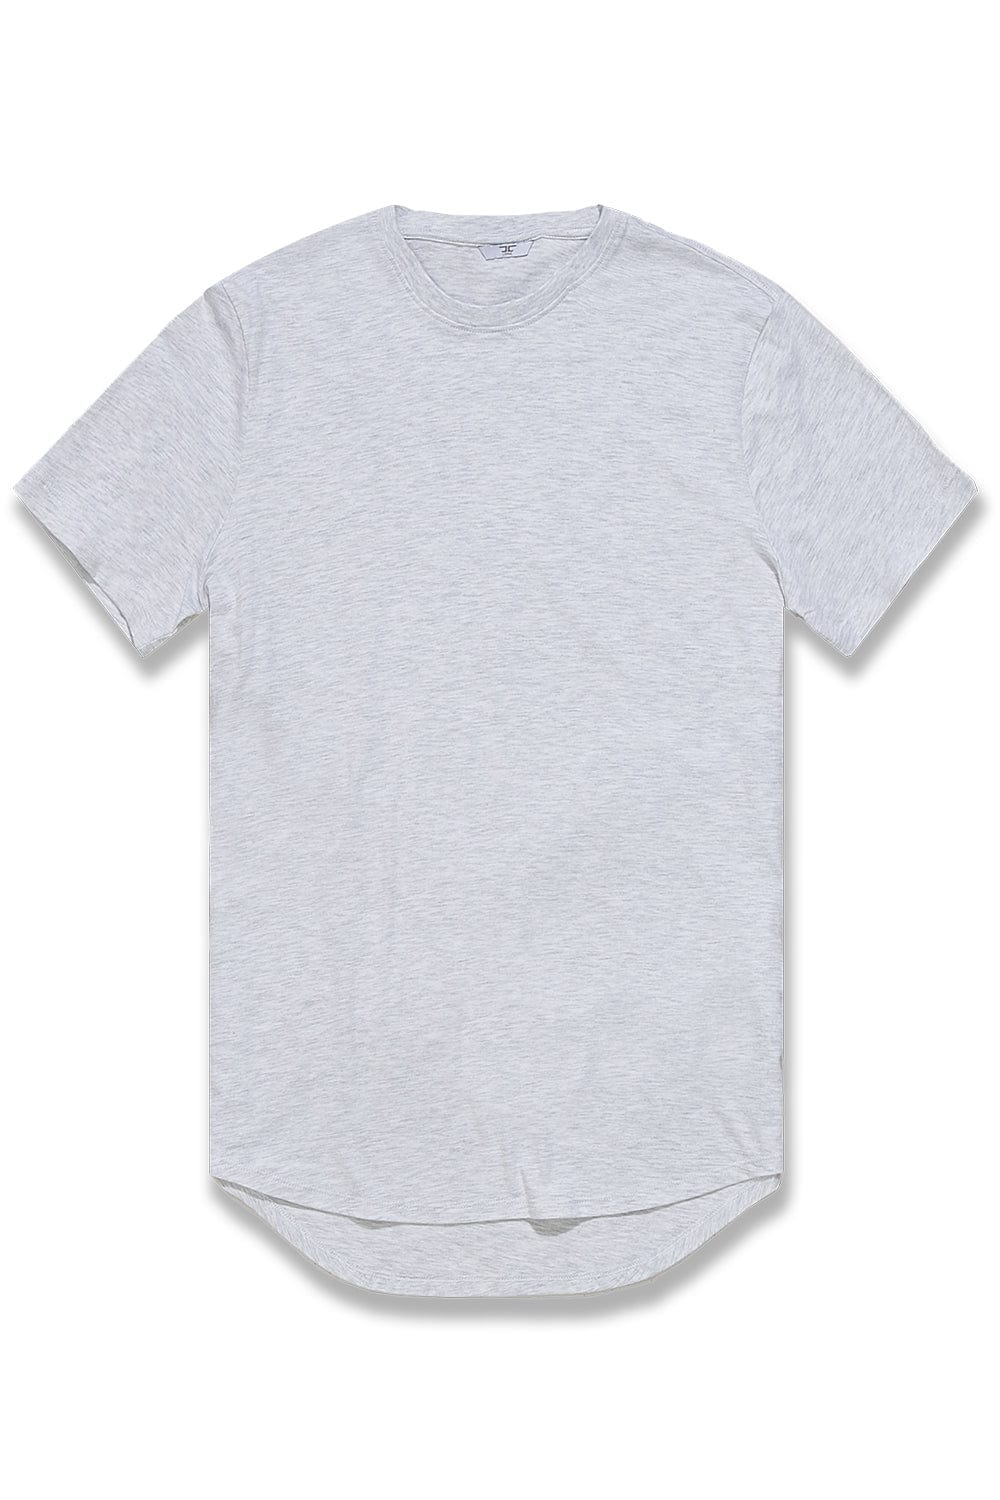 JC Big Men Big Men's Scallop T-Shirt (Name Your Price) White Silver / 4XL